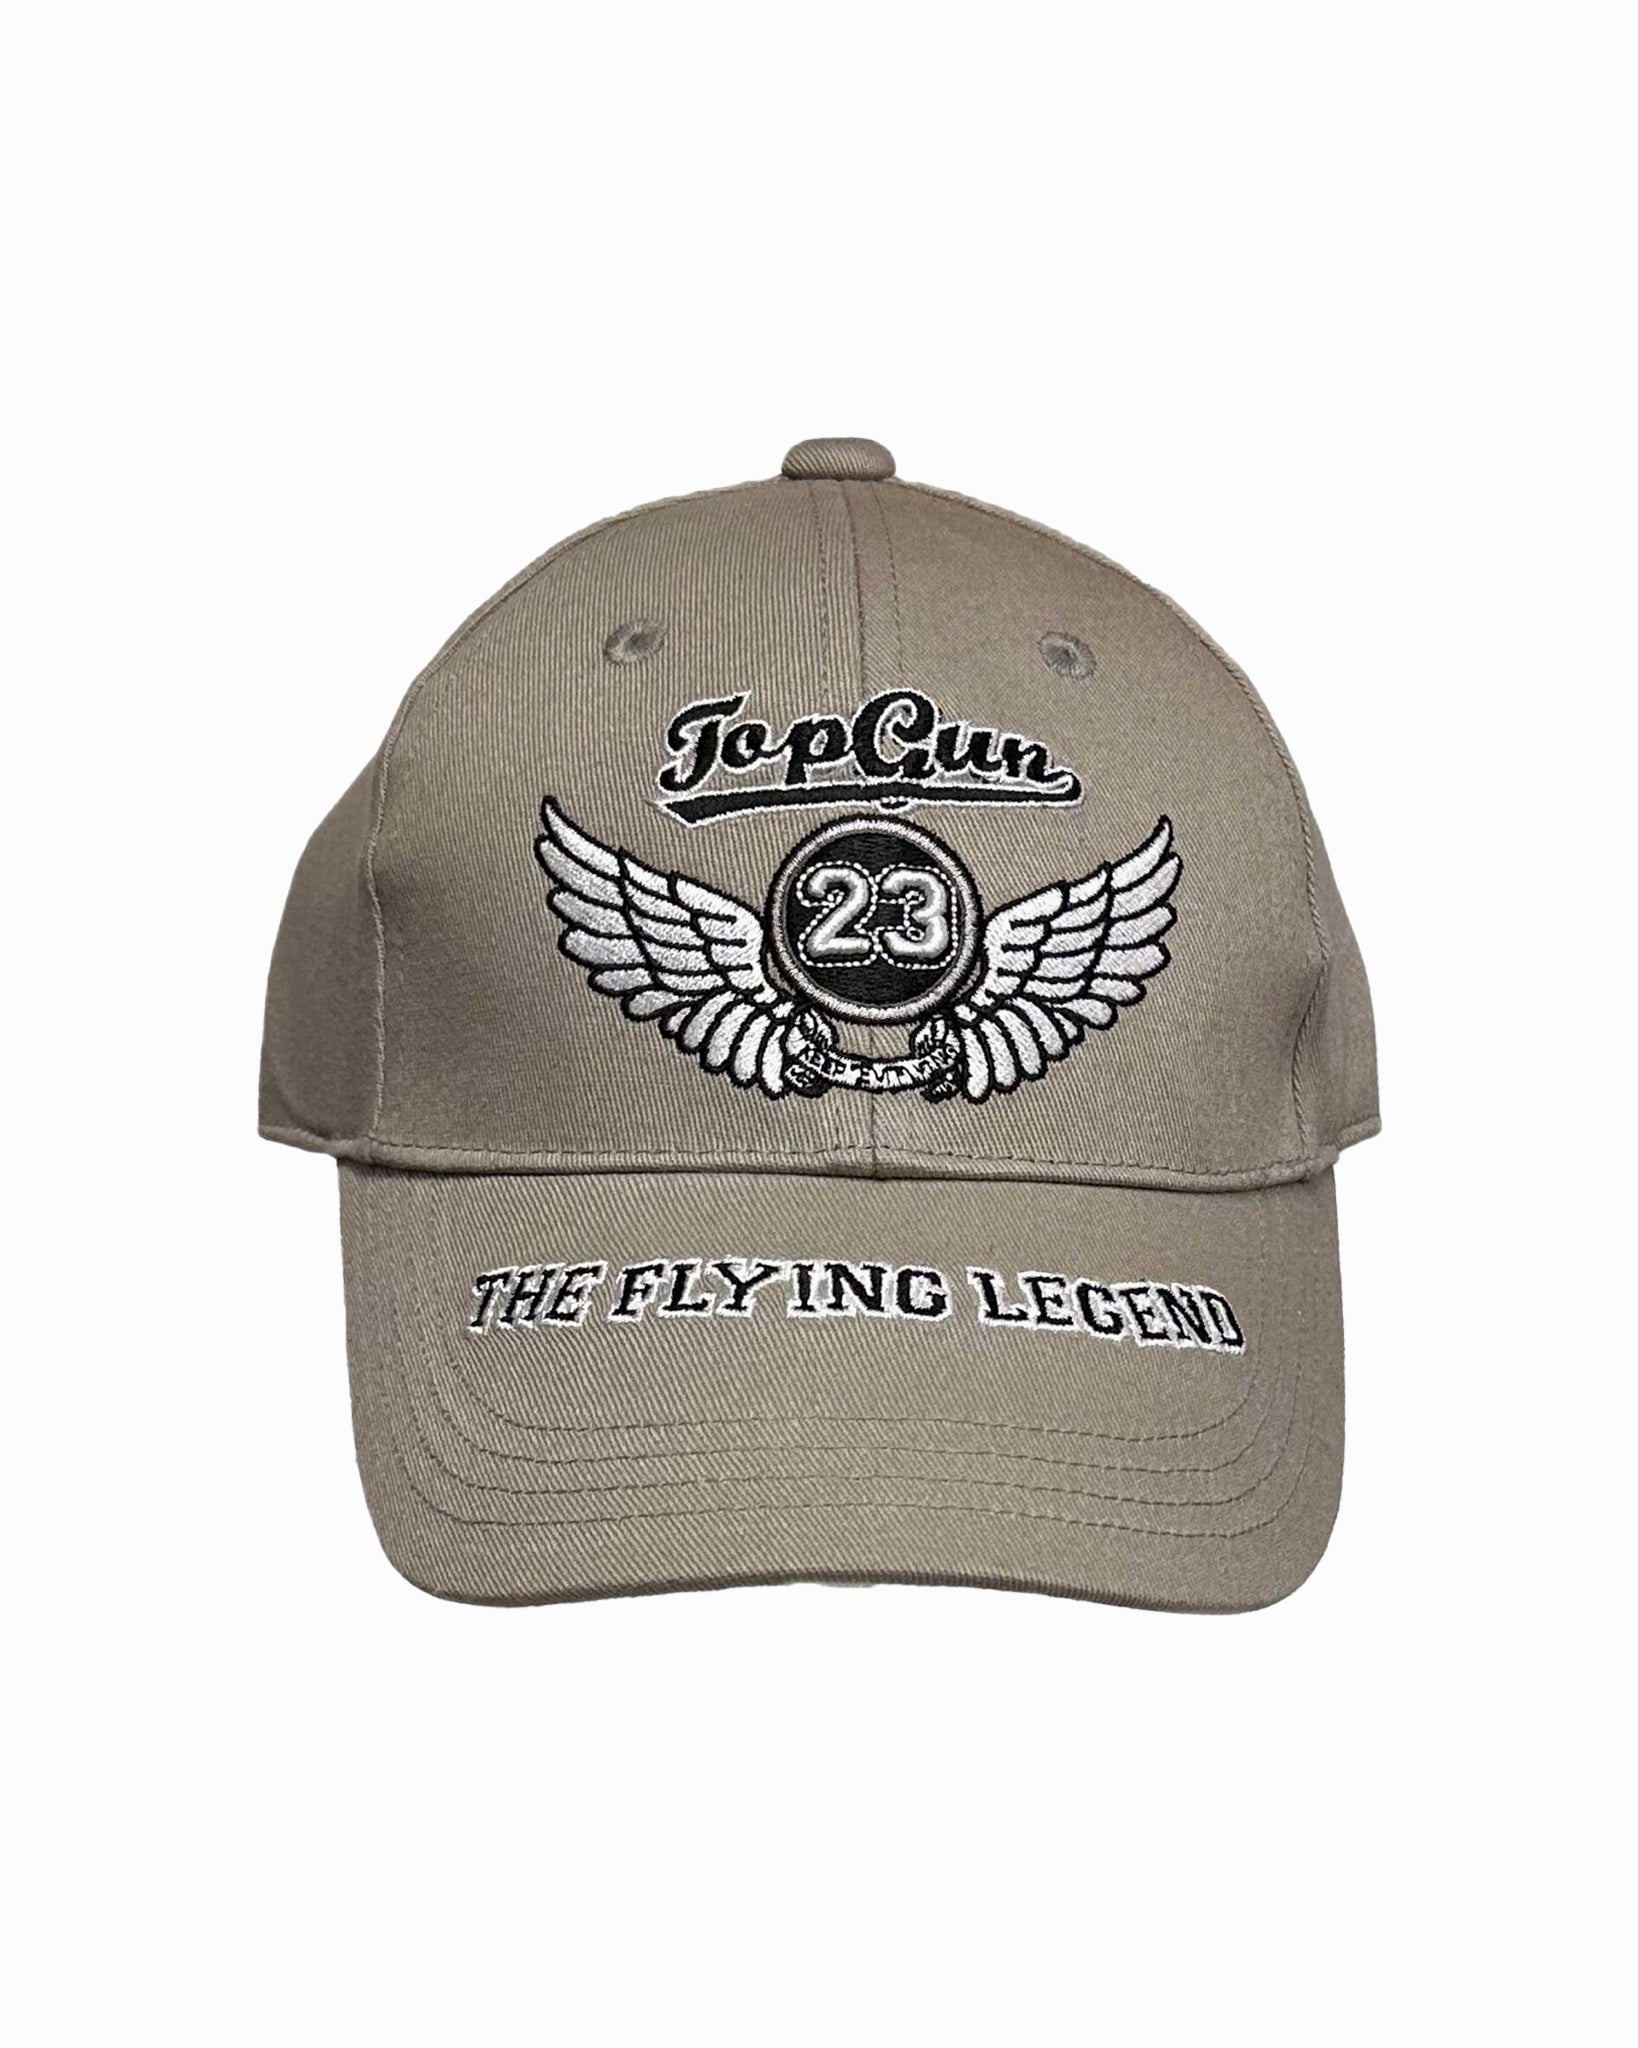 TOP GUN® "THE FLYING LEGEND" CAP